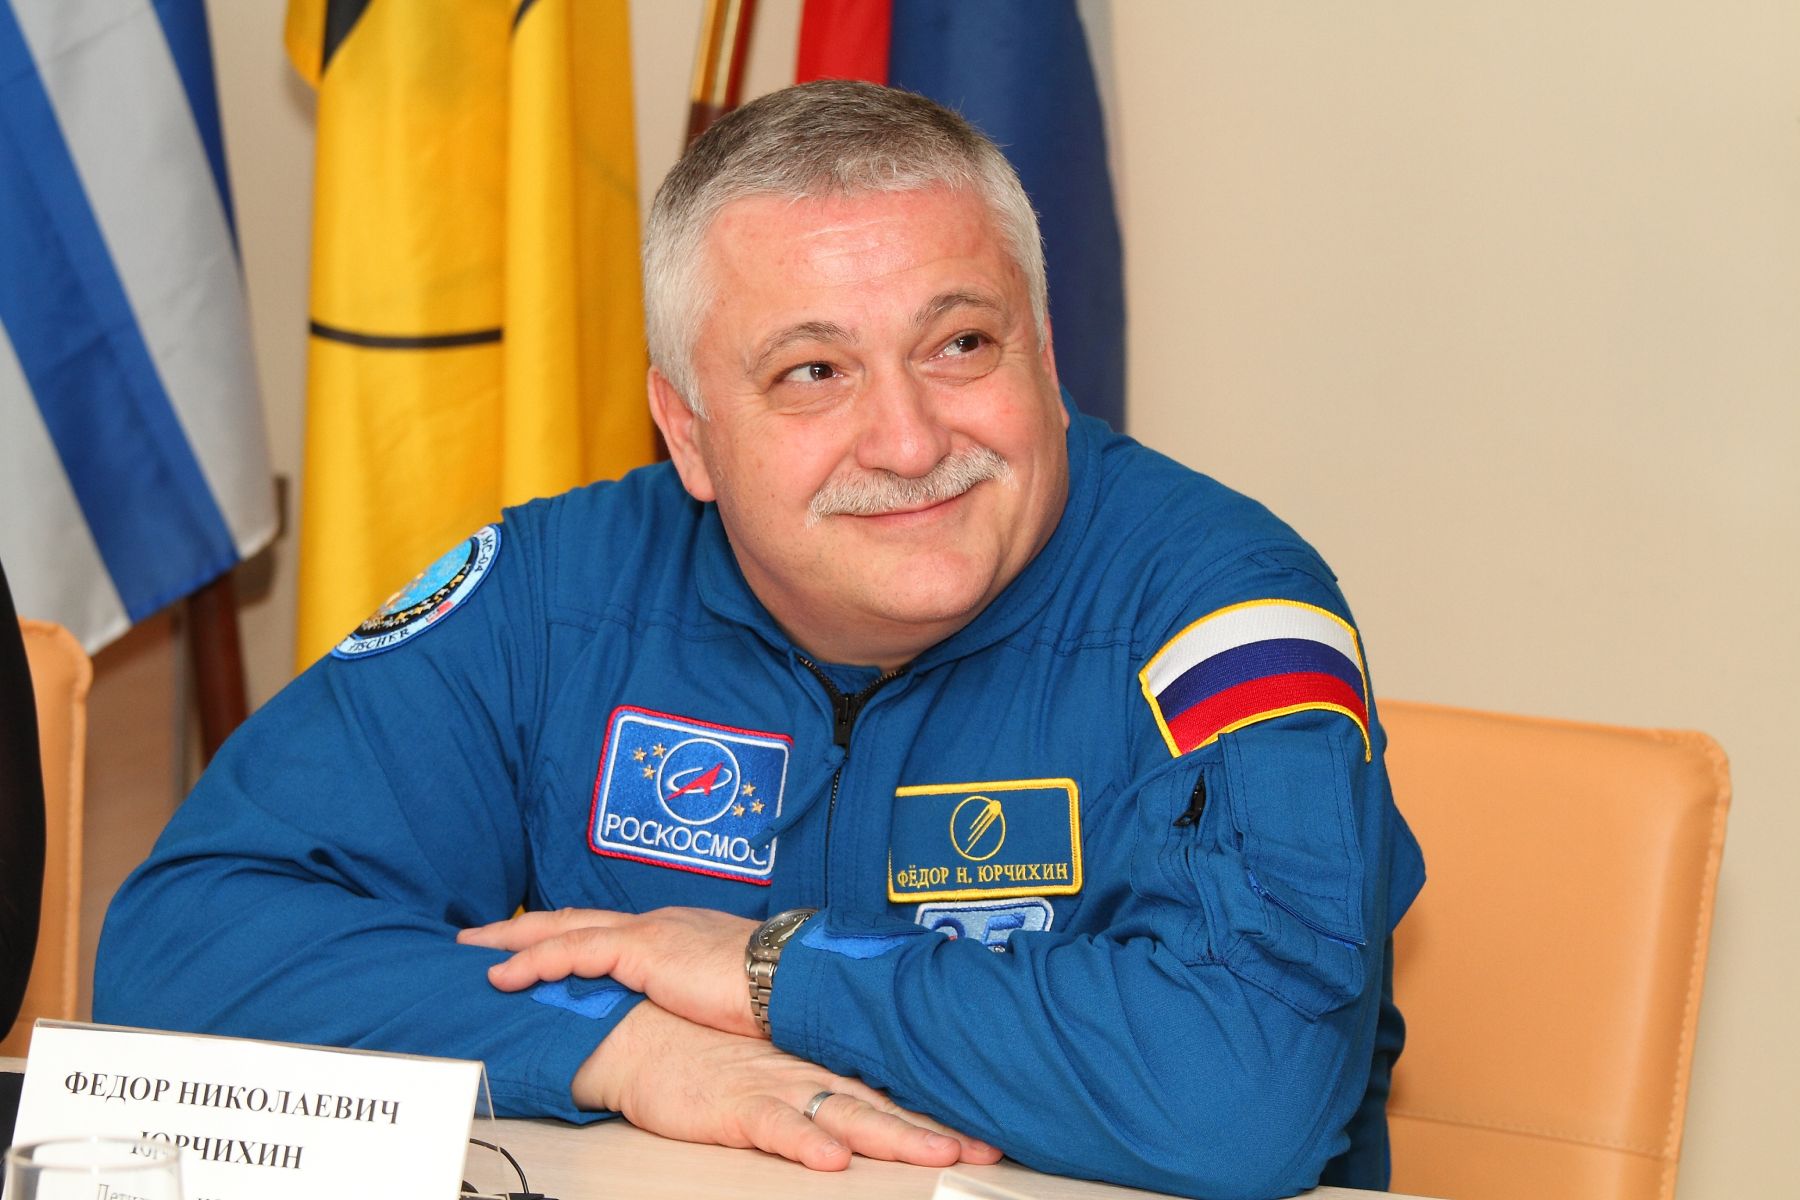 Ένας Ρώσος αστροναύτης με ποντιακή καταγωγή… σε περίπατο εκτός του Διεθνή Διαστημικού Σταθμού